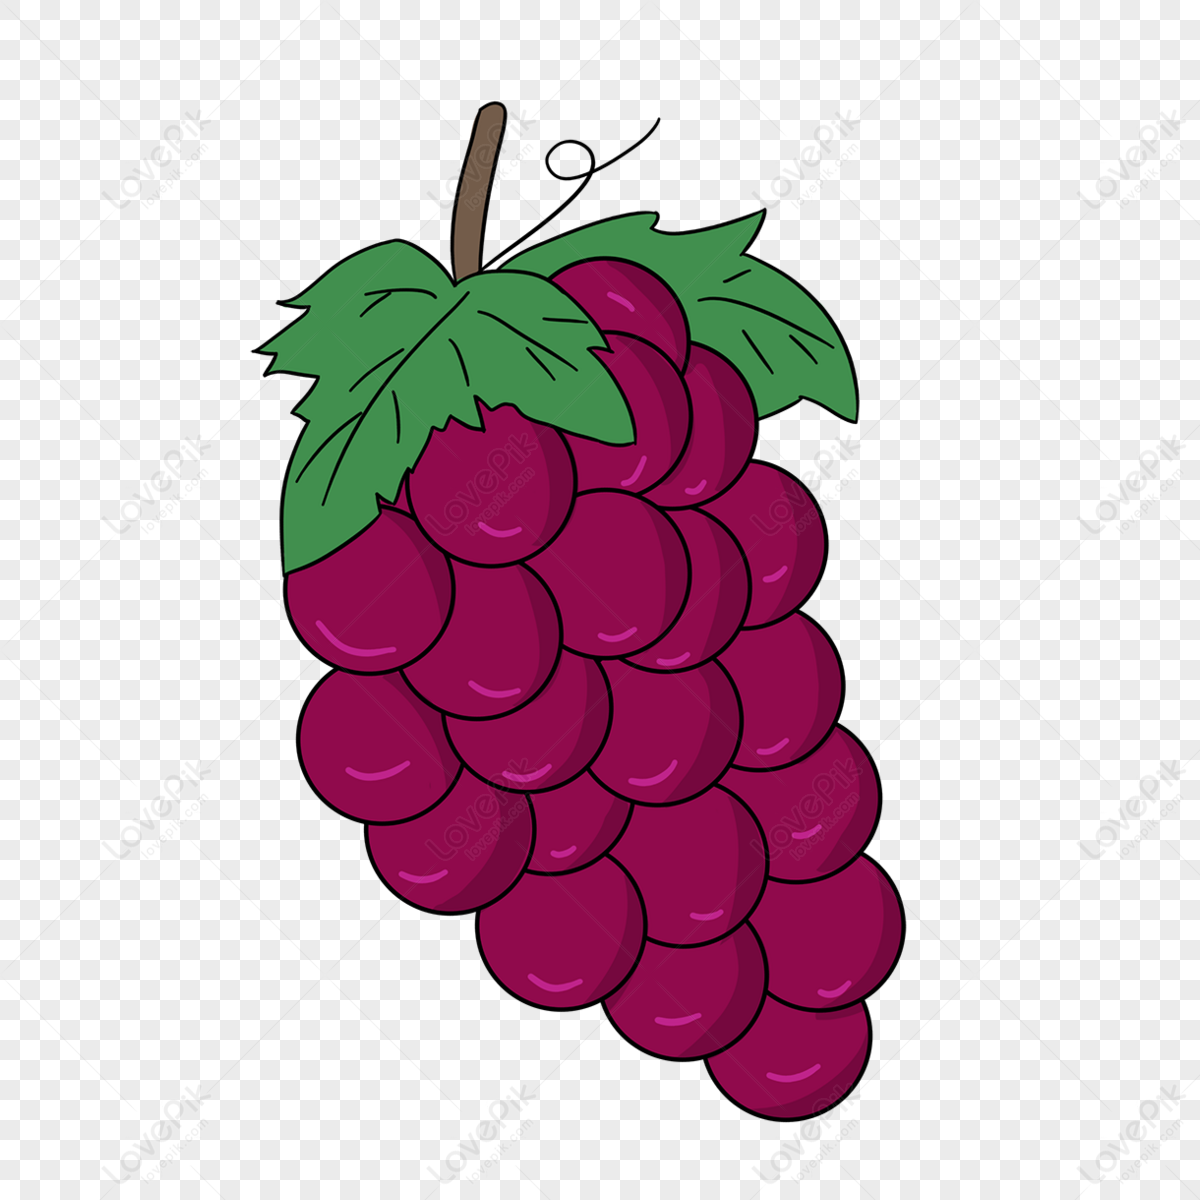 Grape PNG Transparent Images Free Download - Pngfre